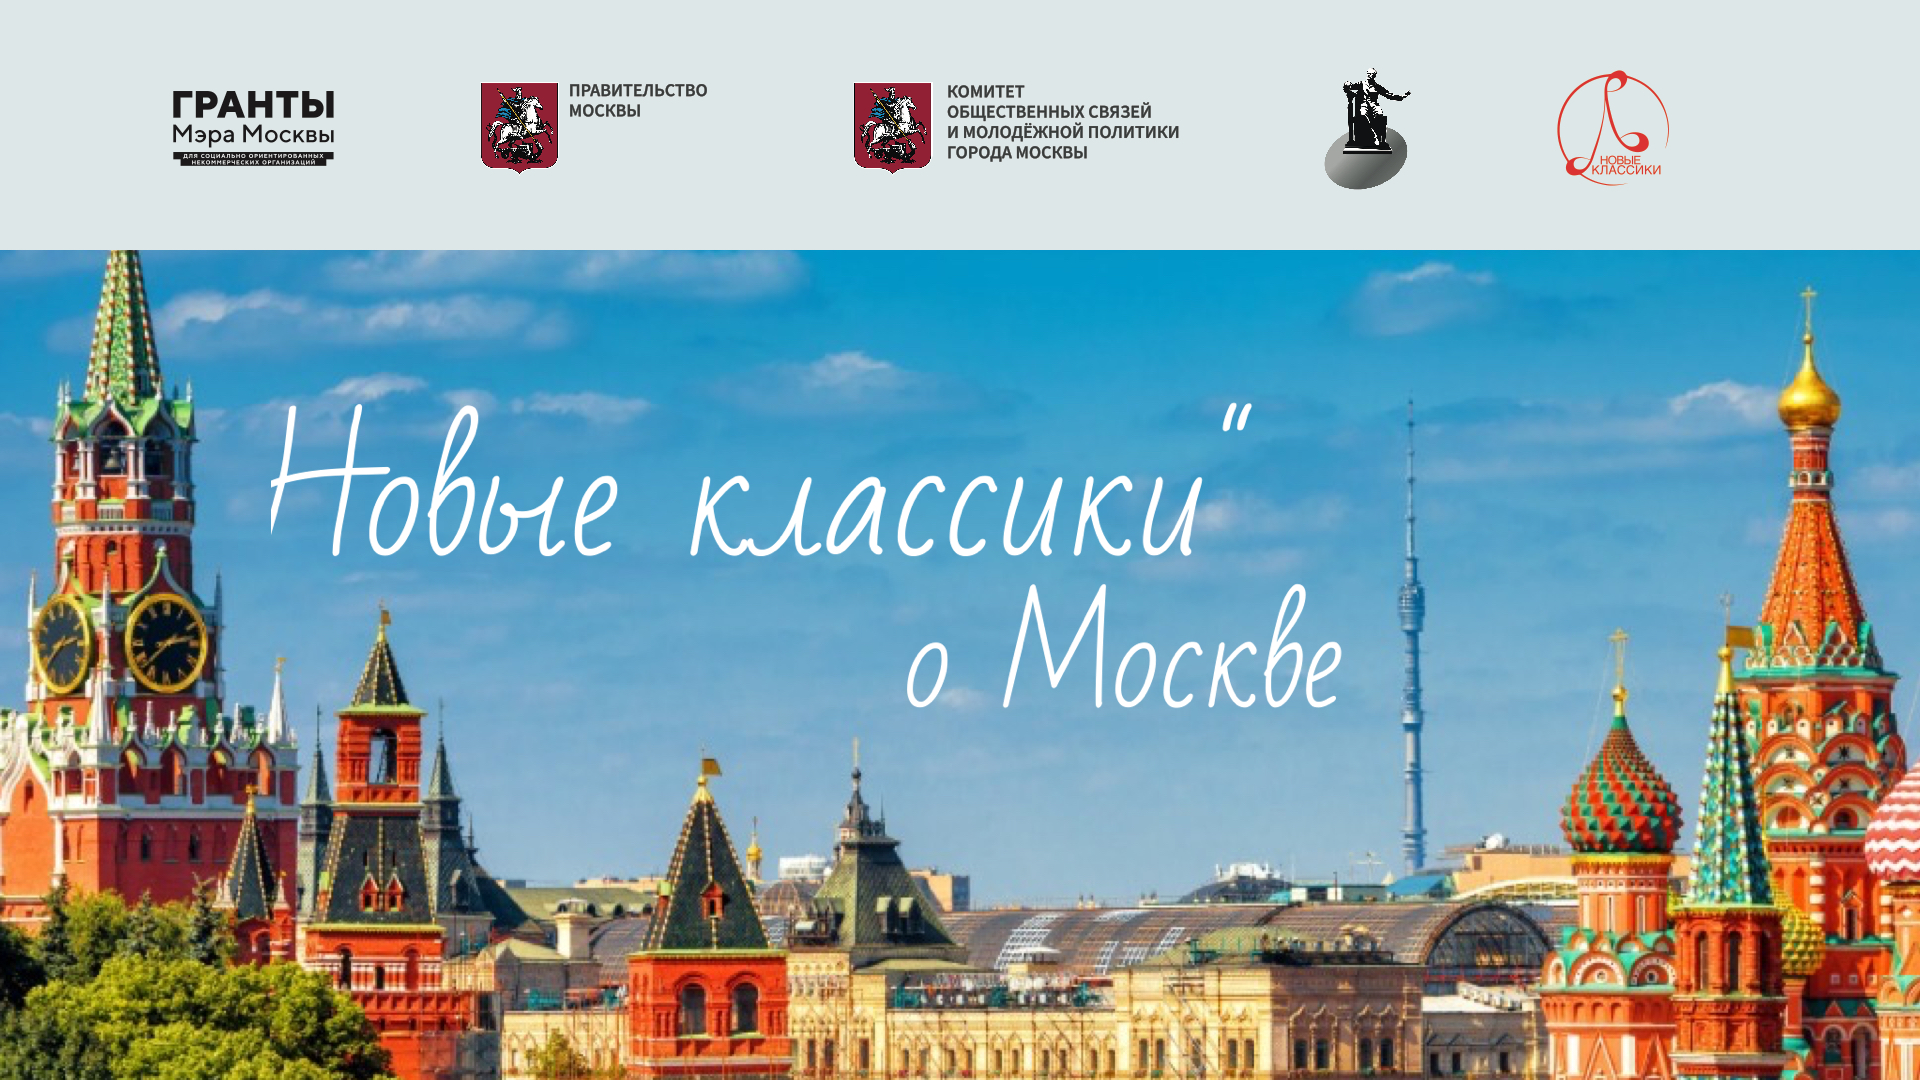 фото: Международный фонд композиторов «Новые классики» проводит конкурс «Новые классики о Москве». 